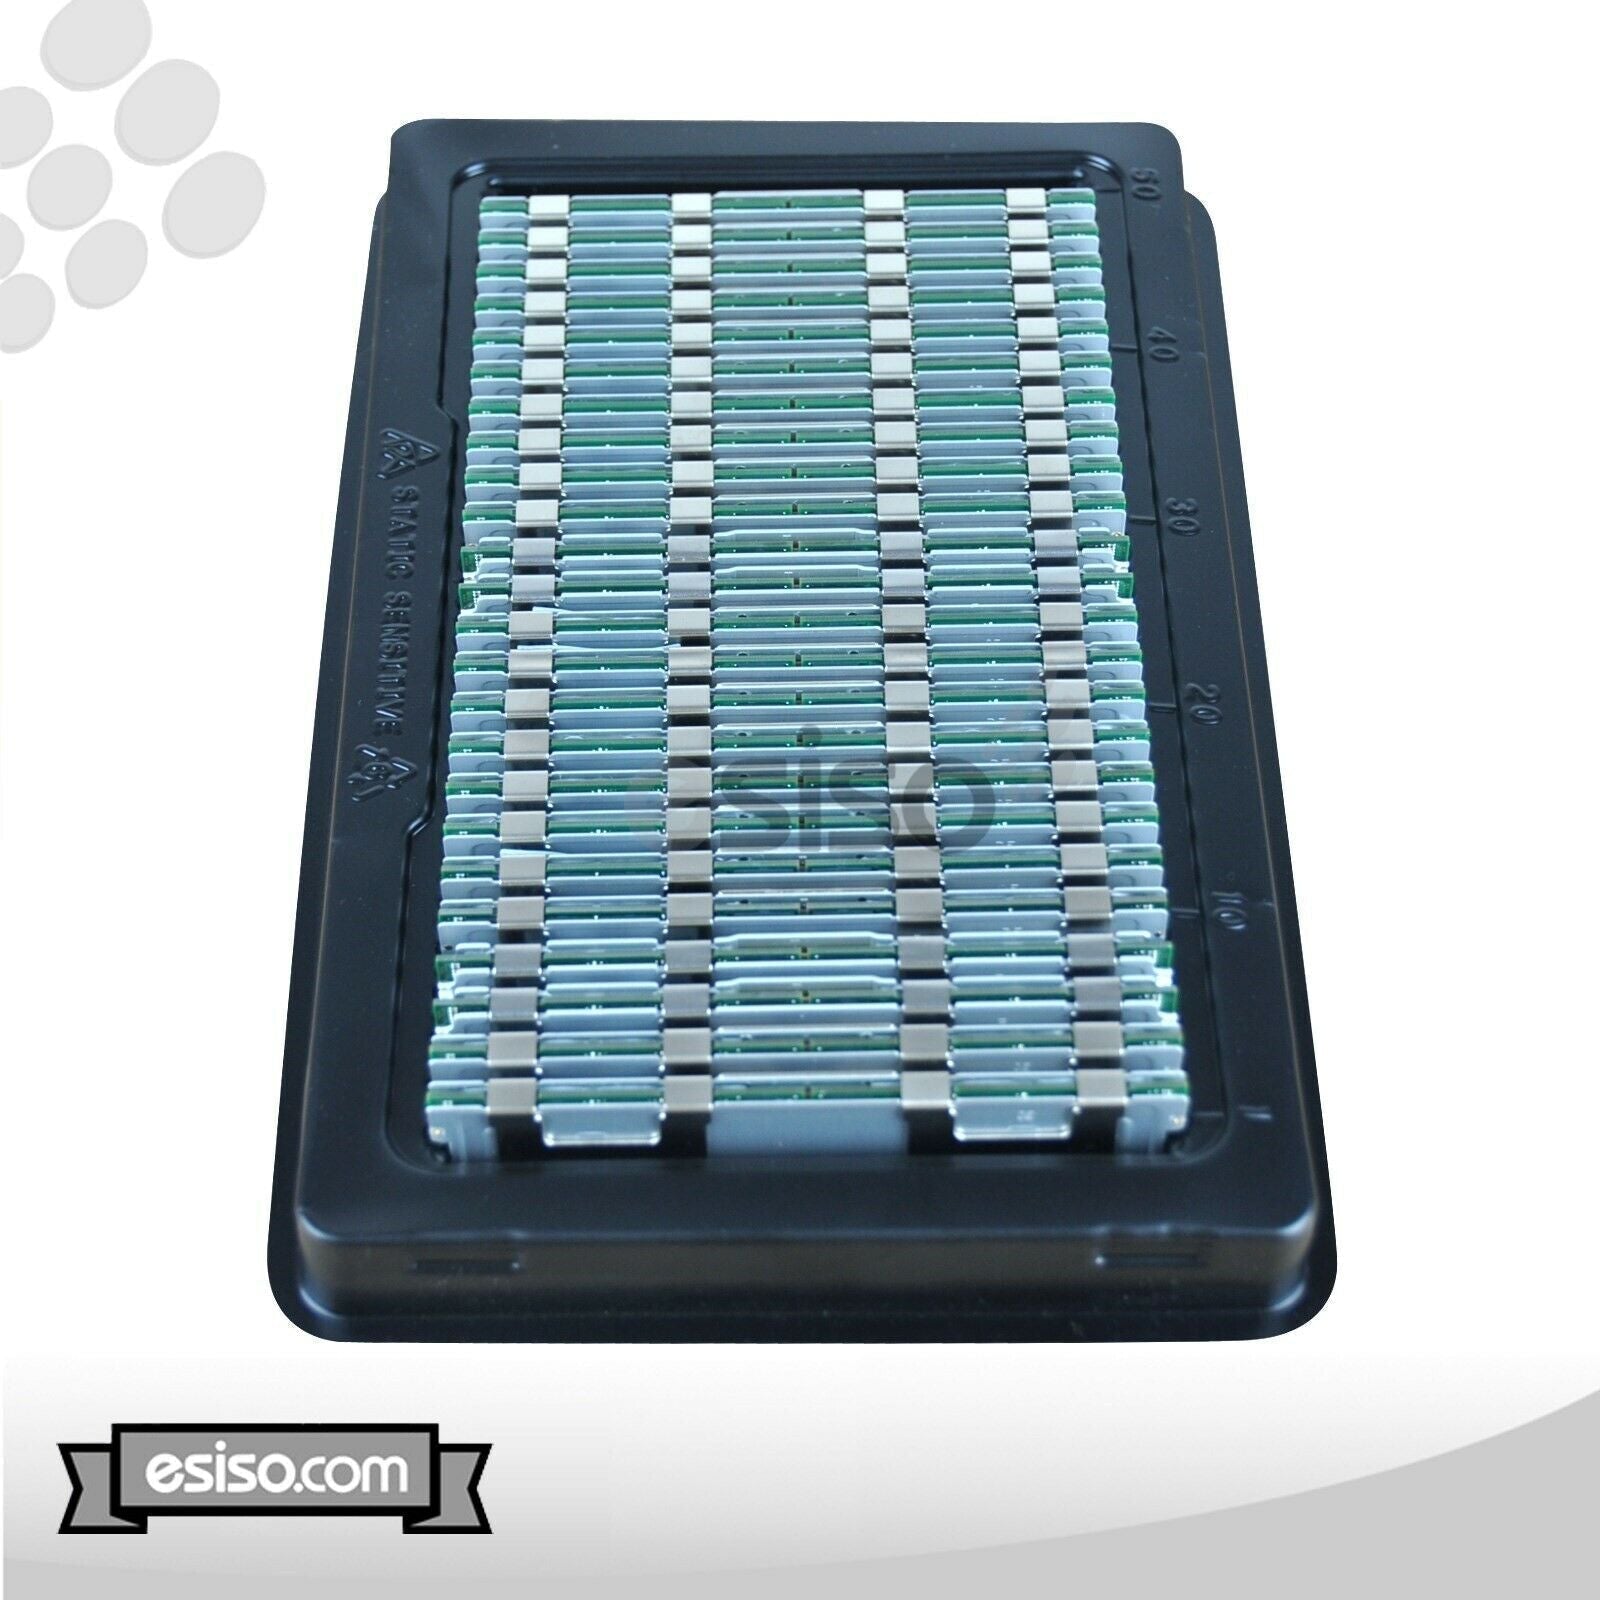 64GB (4x 16GB) 10600R RAM MEMORY MODULE FOR HP BL680C DL165 DL385 G7